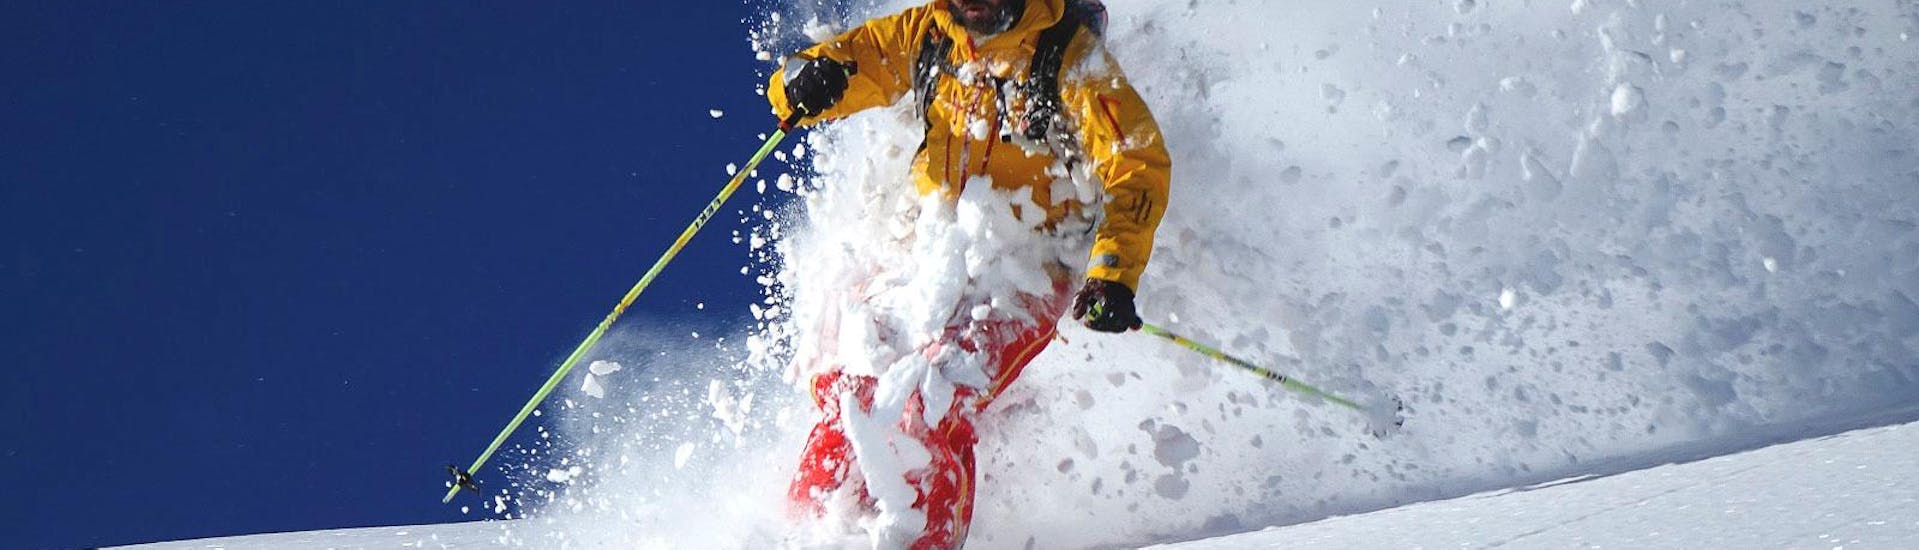 Cours particulier de ski freeride pour Tous niveaux avec Snow & Mountain Sports Loitzl Loser.